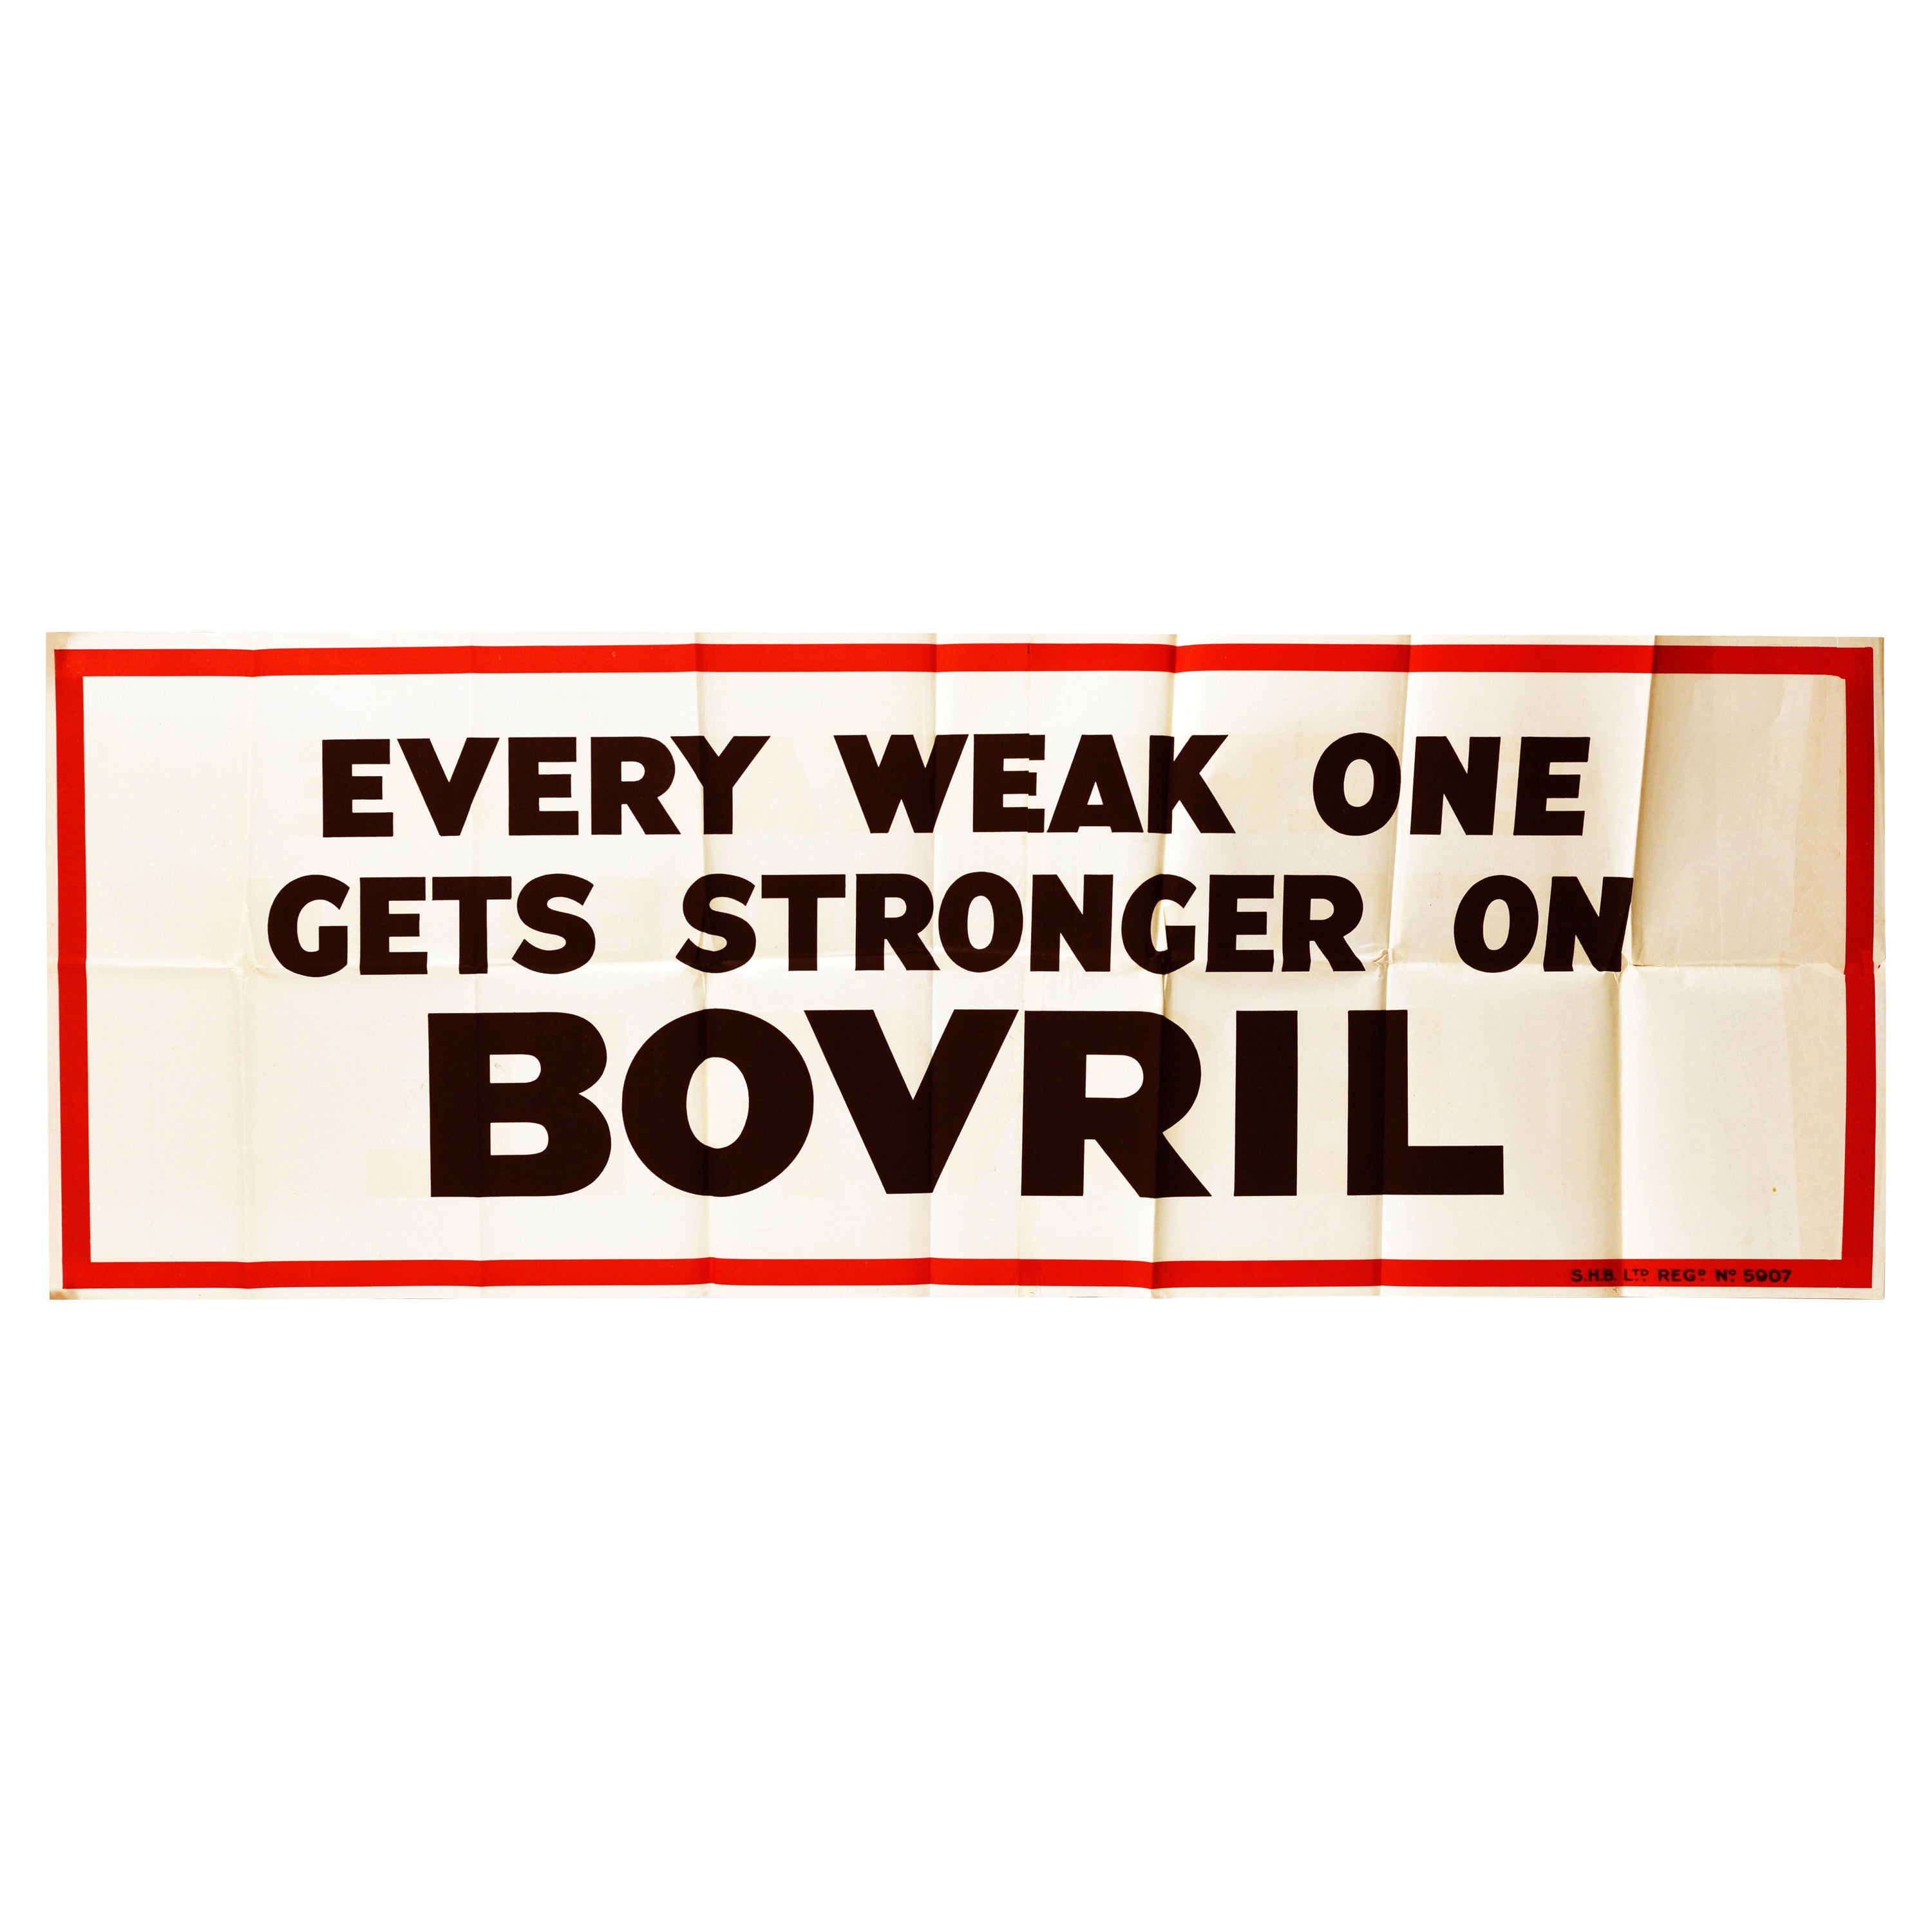 Affiche vintage d'origine « Every Weak One Gets Stronger On Bovril Word Play » (Chaque bourdon prend plus de force sur la santé au jeu des mots)